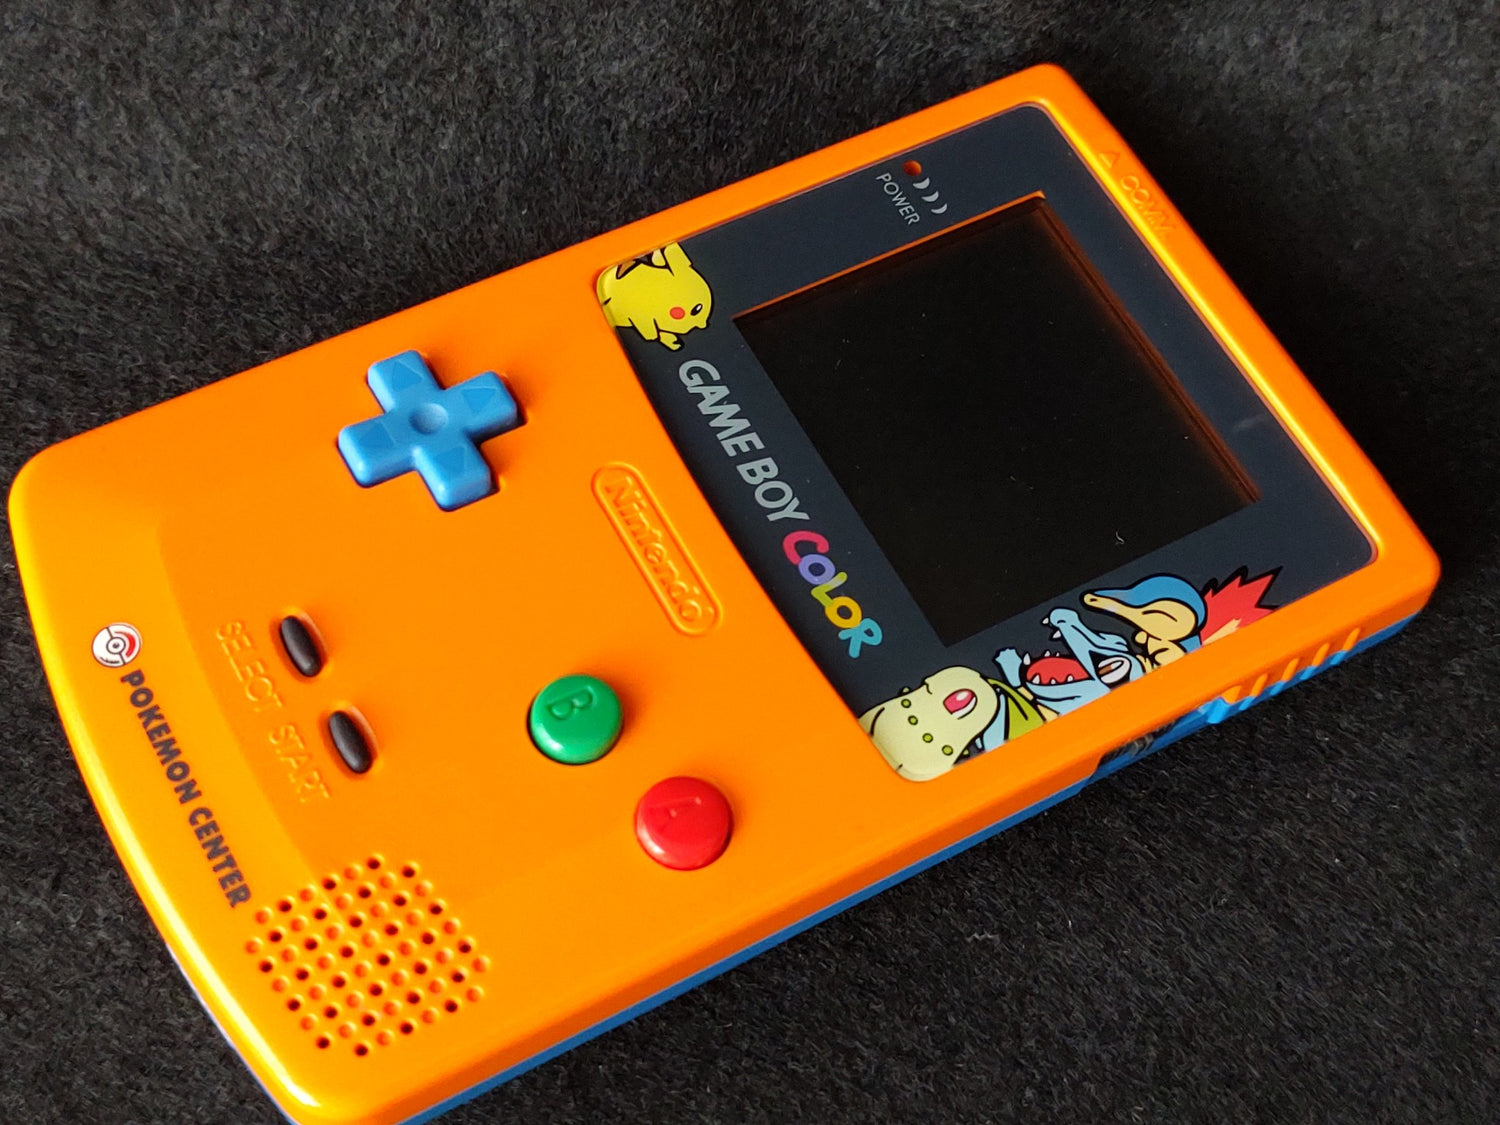 Nintendo Gameboy Color Pokemon Limited edition Orange color